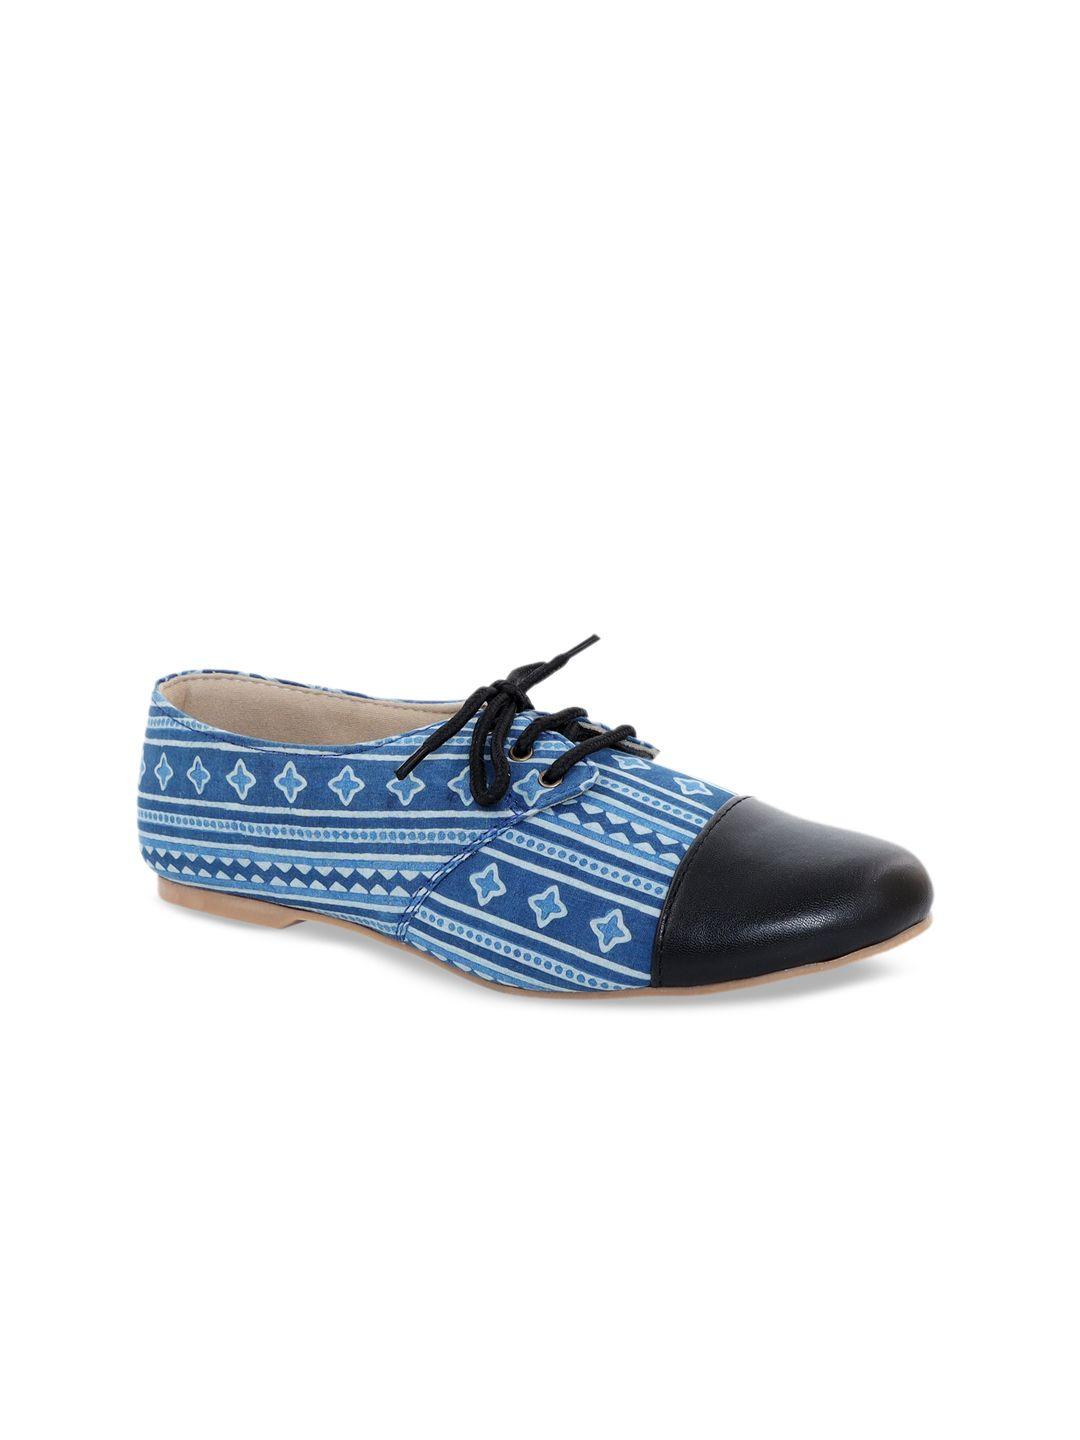 kanvas women blue boat shoes